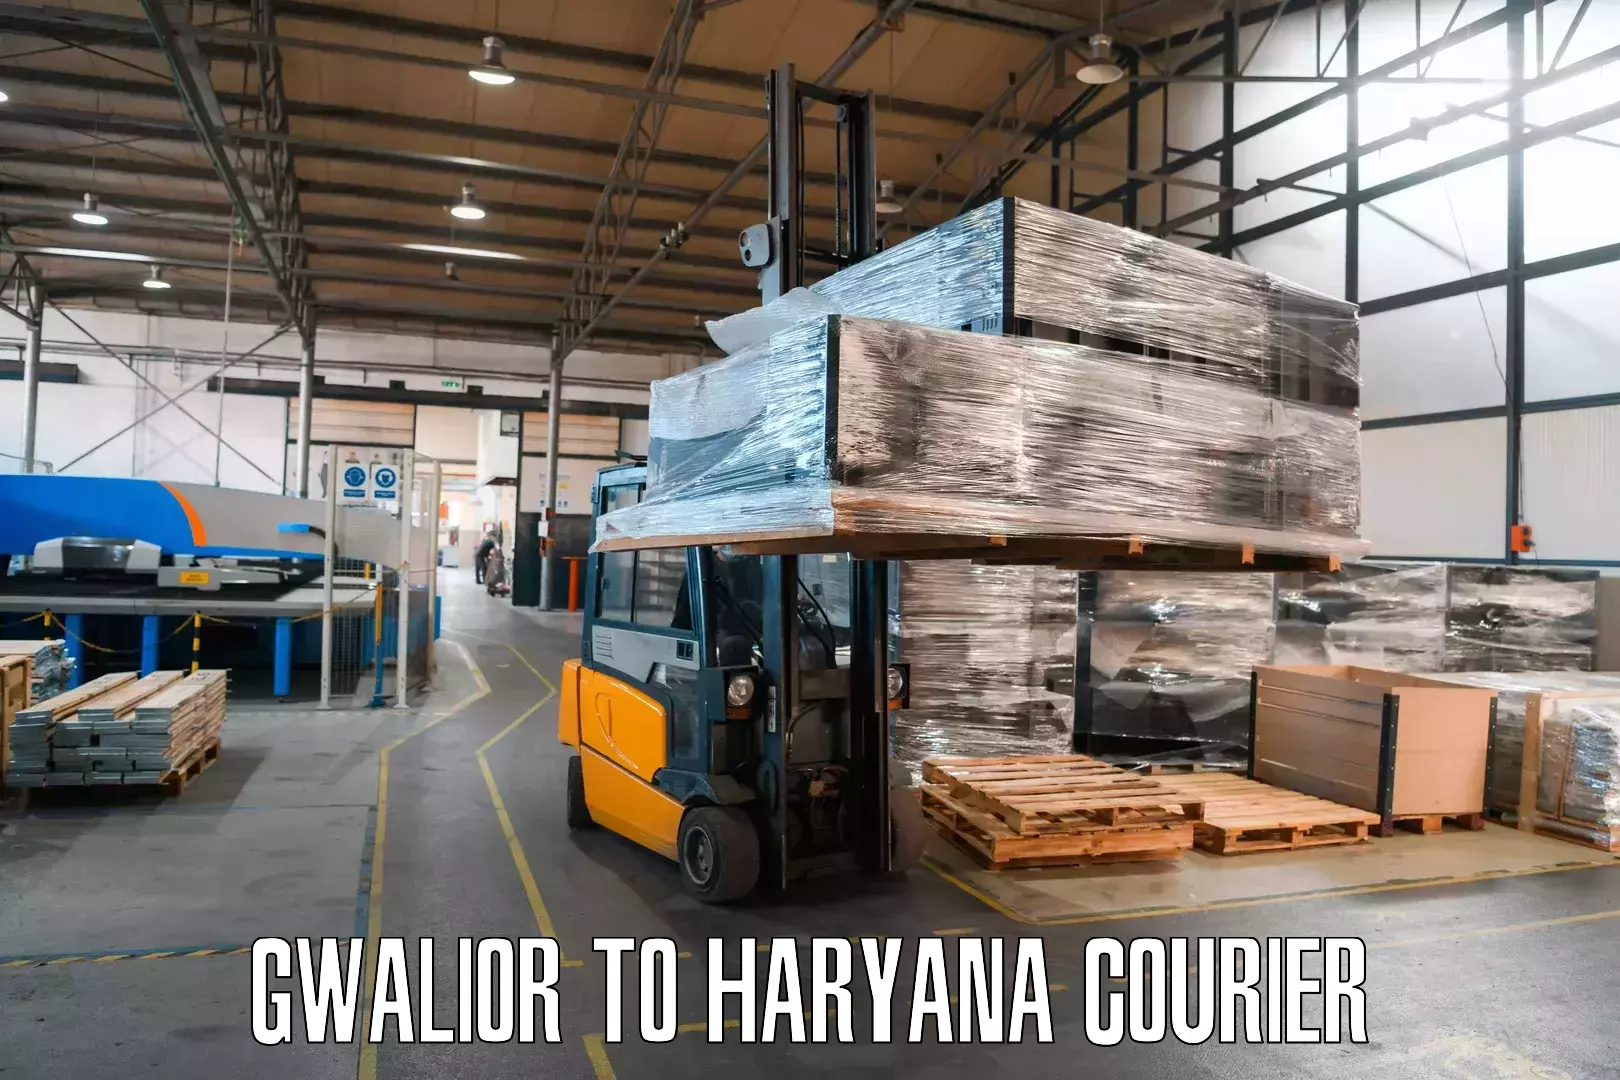 Cargo courier service Gwalior to IIIT Sonepat